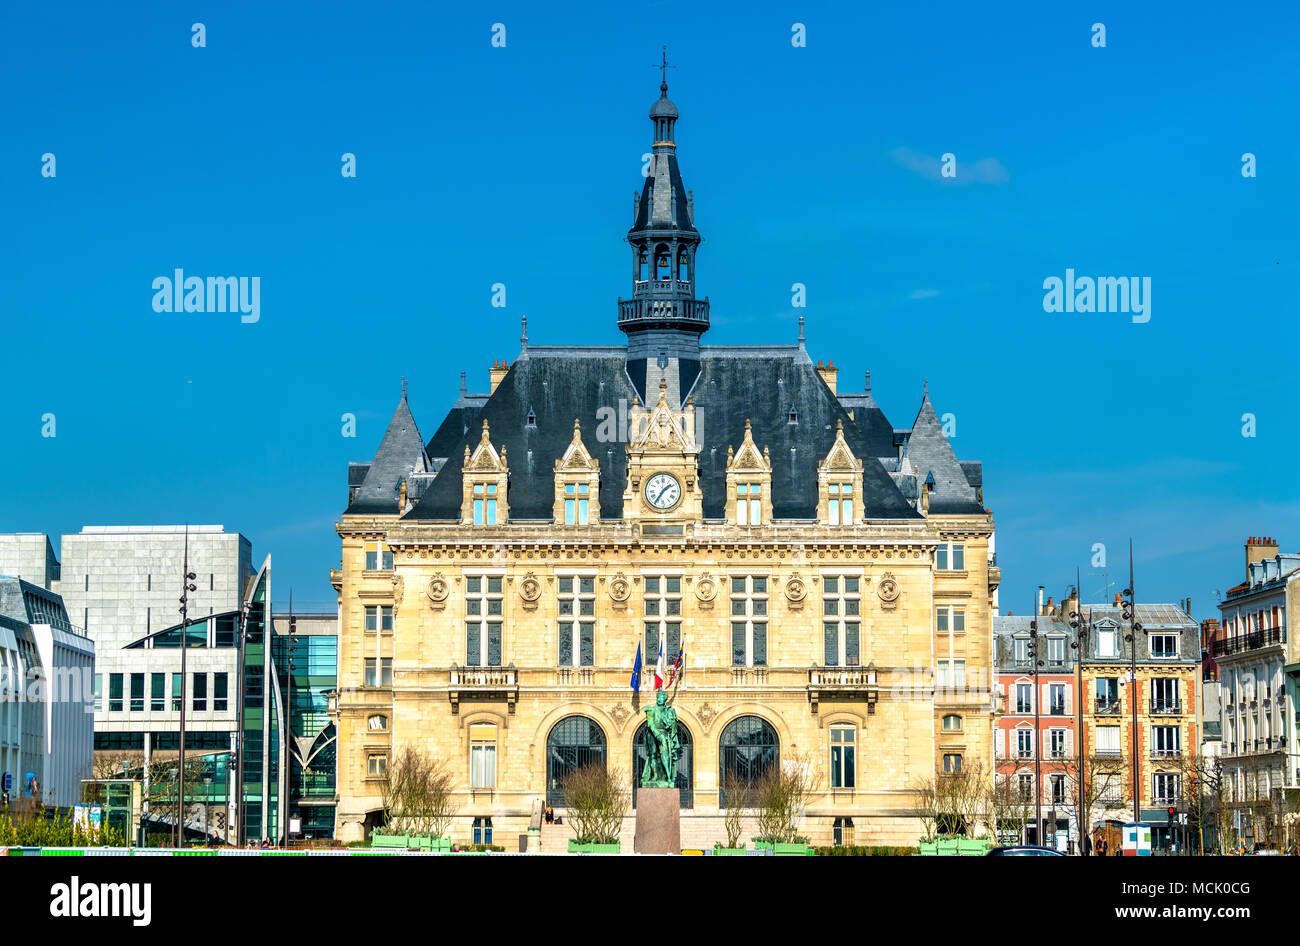 Mairie de Vincennes, the town hall of Vincennes near Paris, France Stock Photo